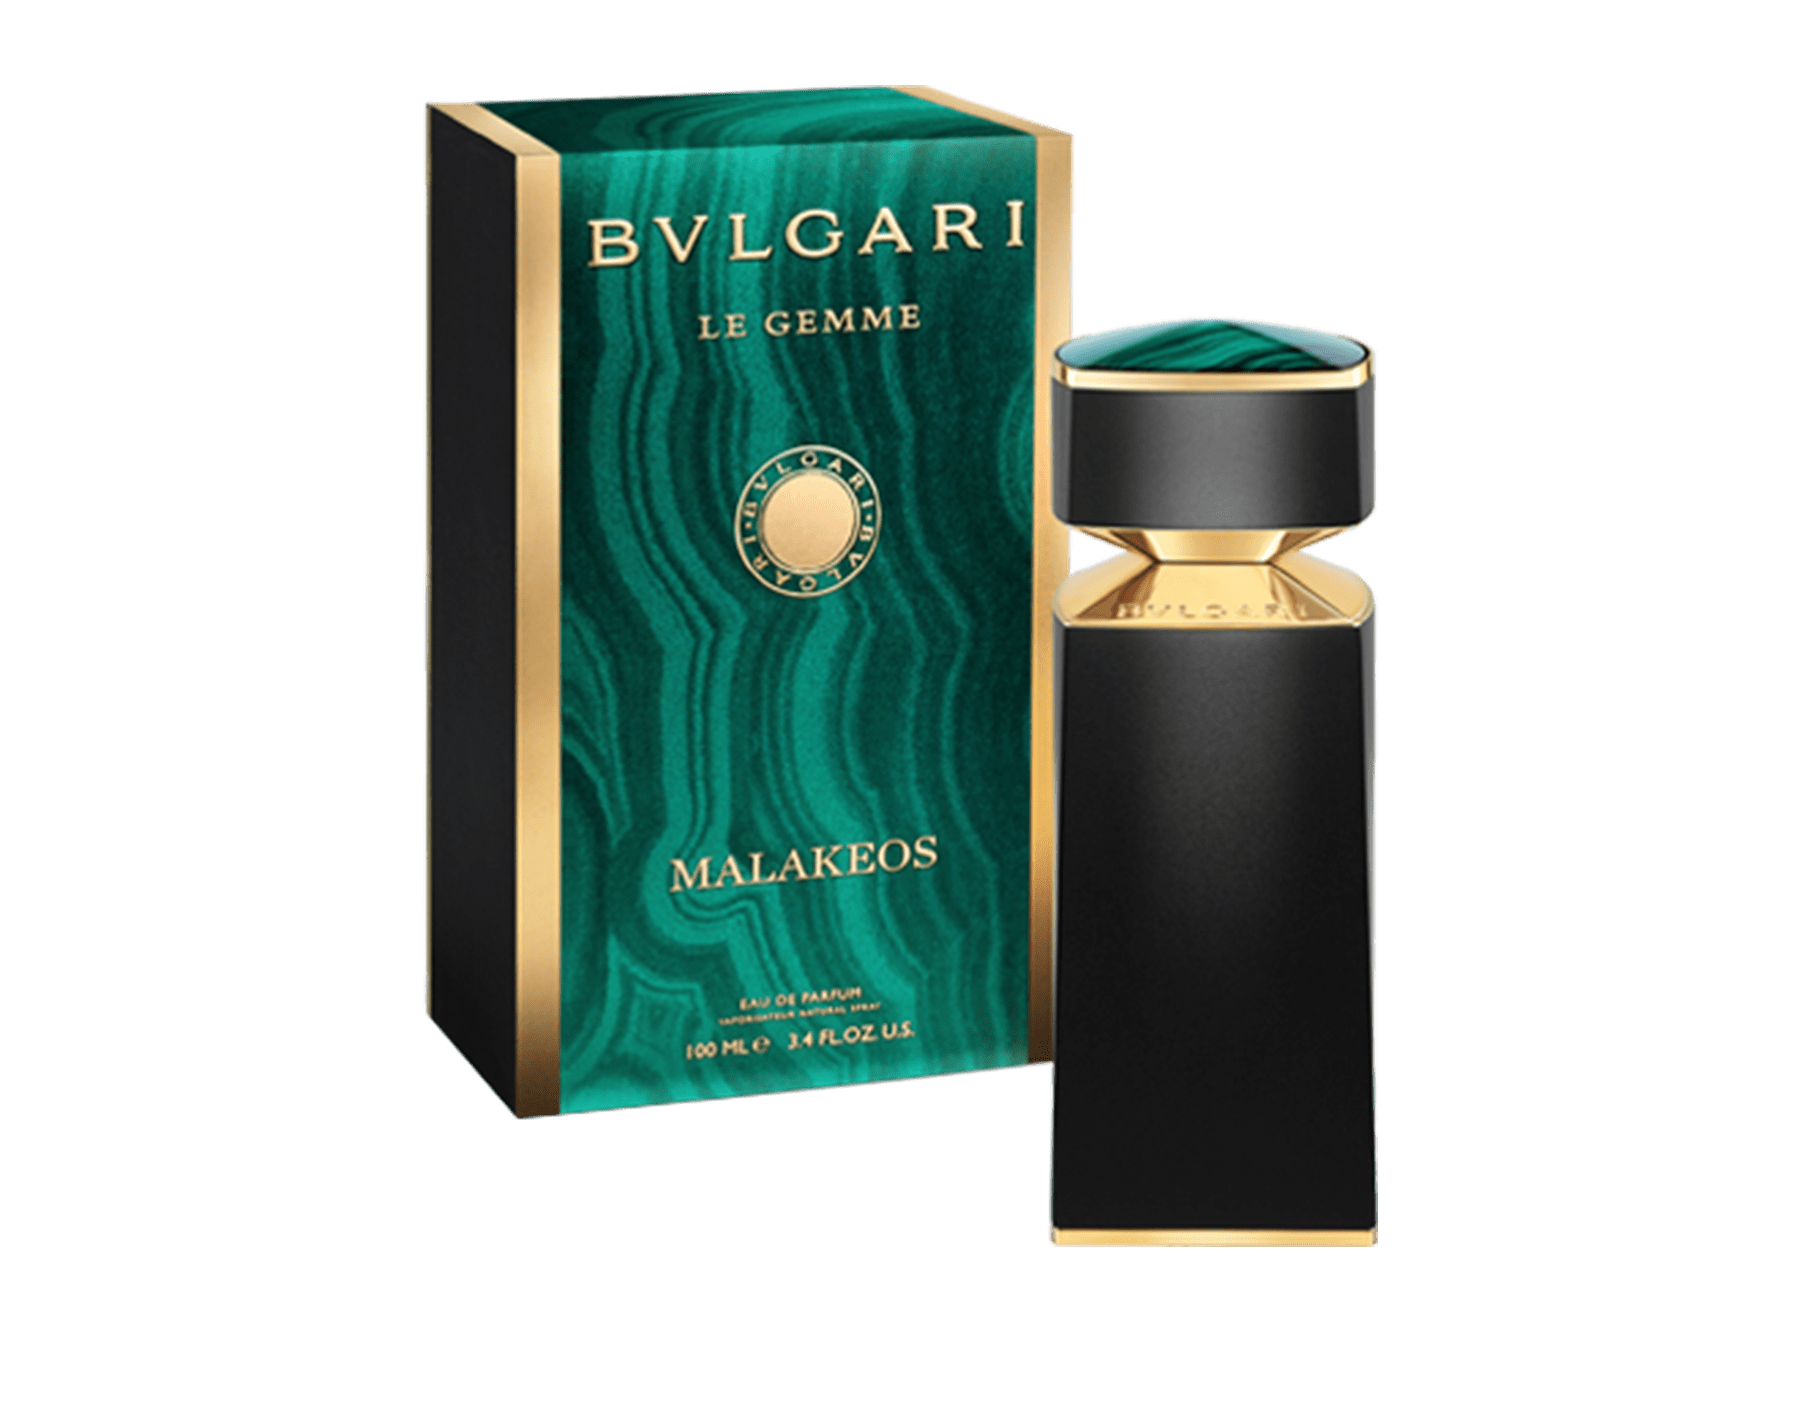 Bvlgari Le Gemme Malakeos For Men Eau De Parfum 100ML